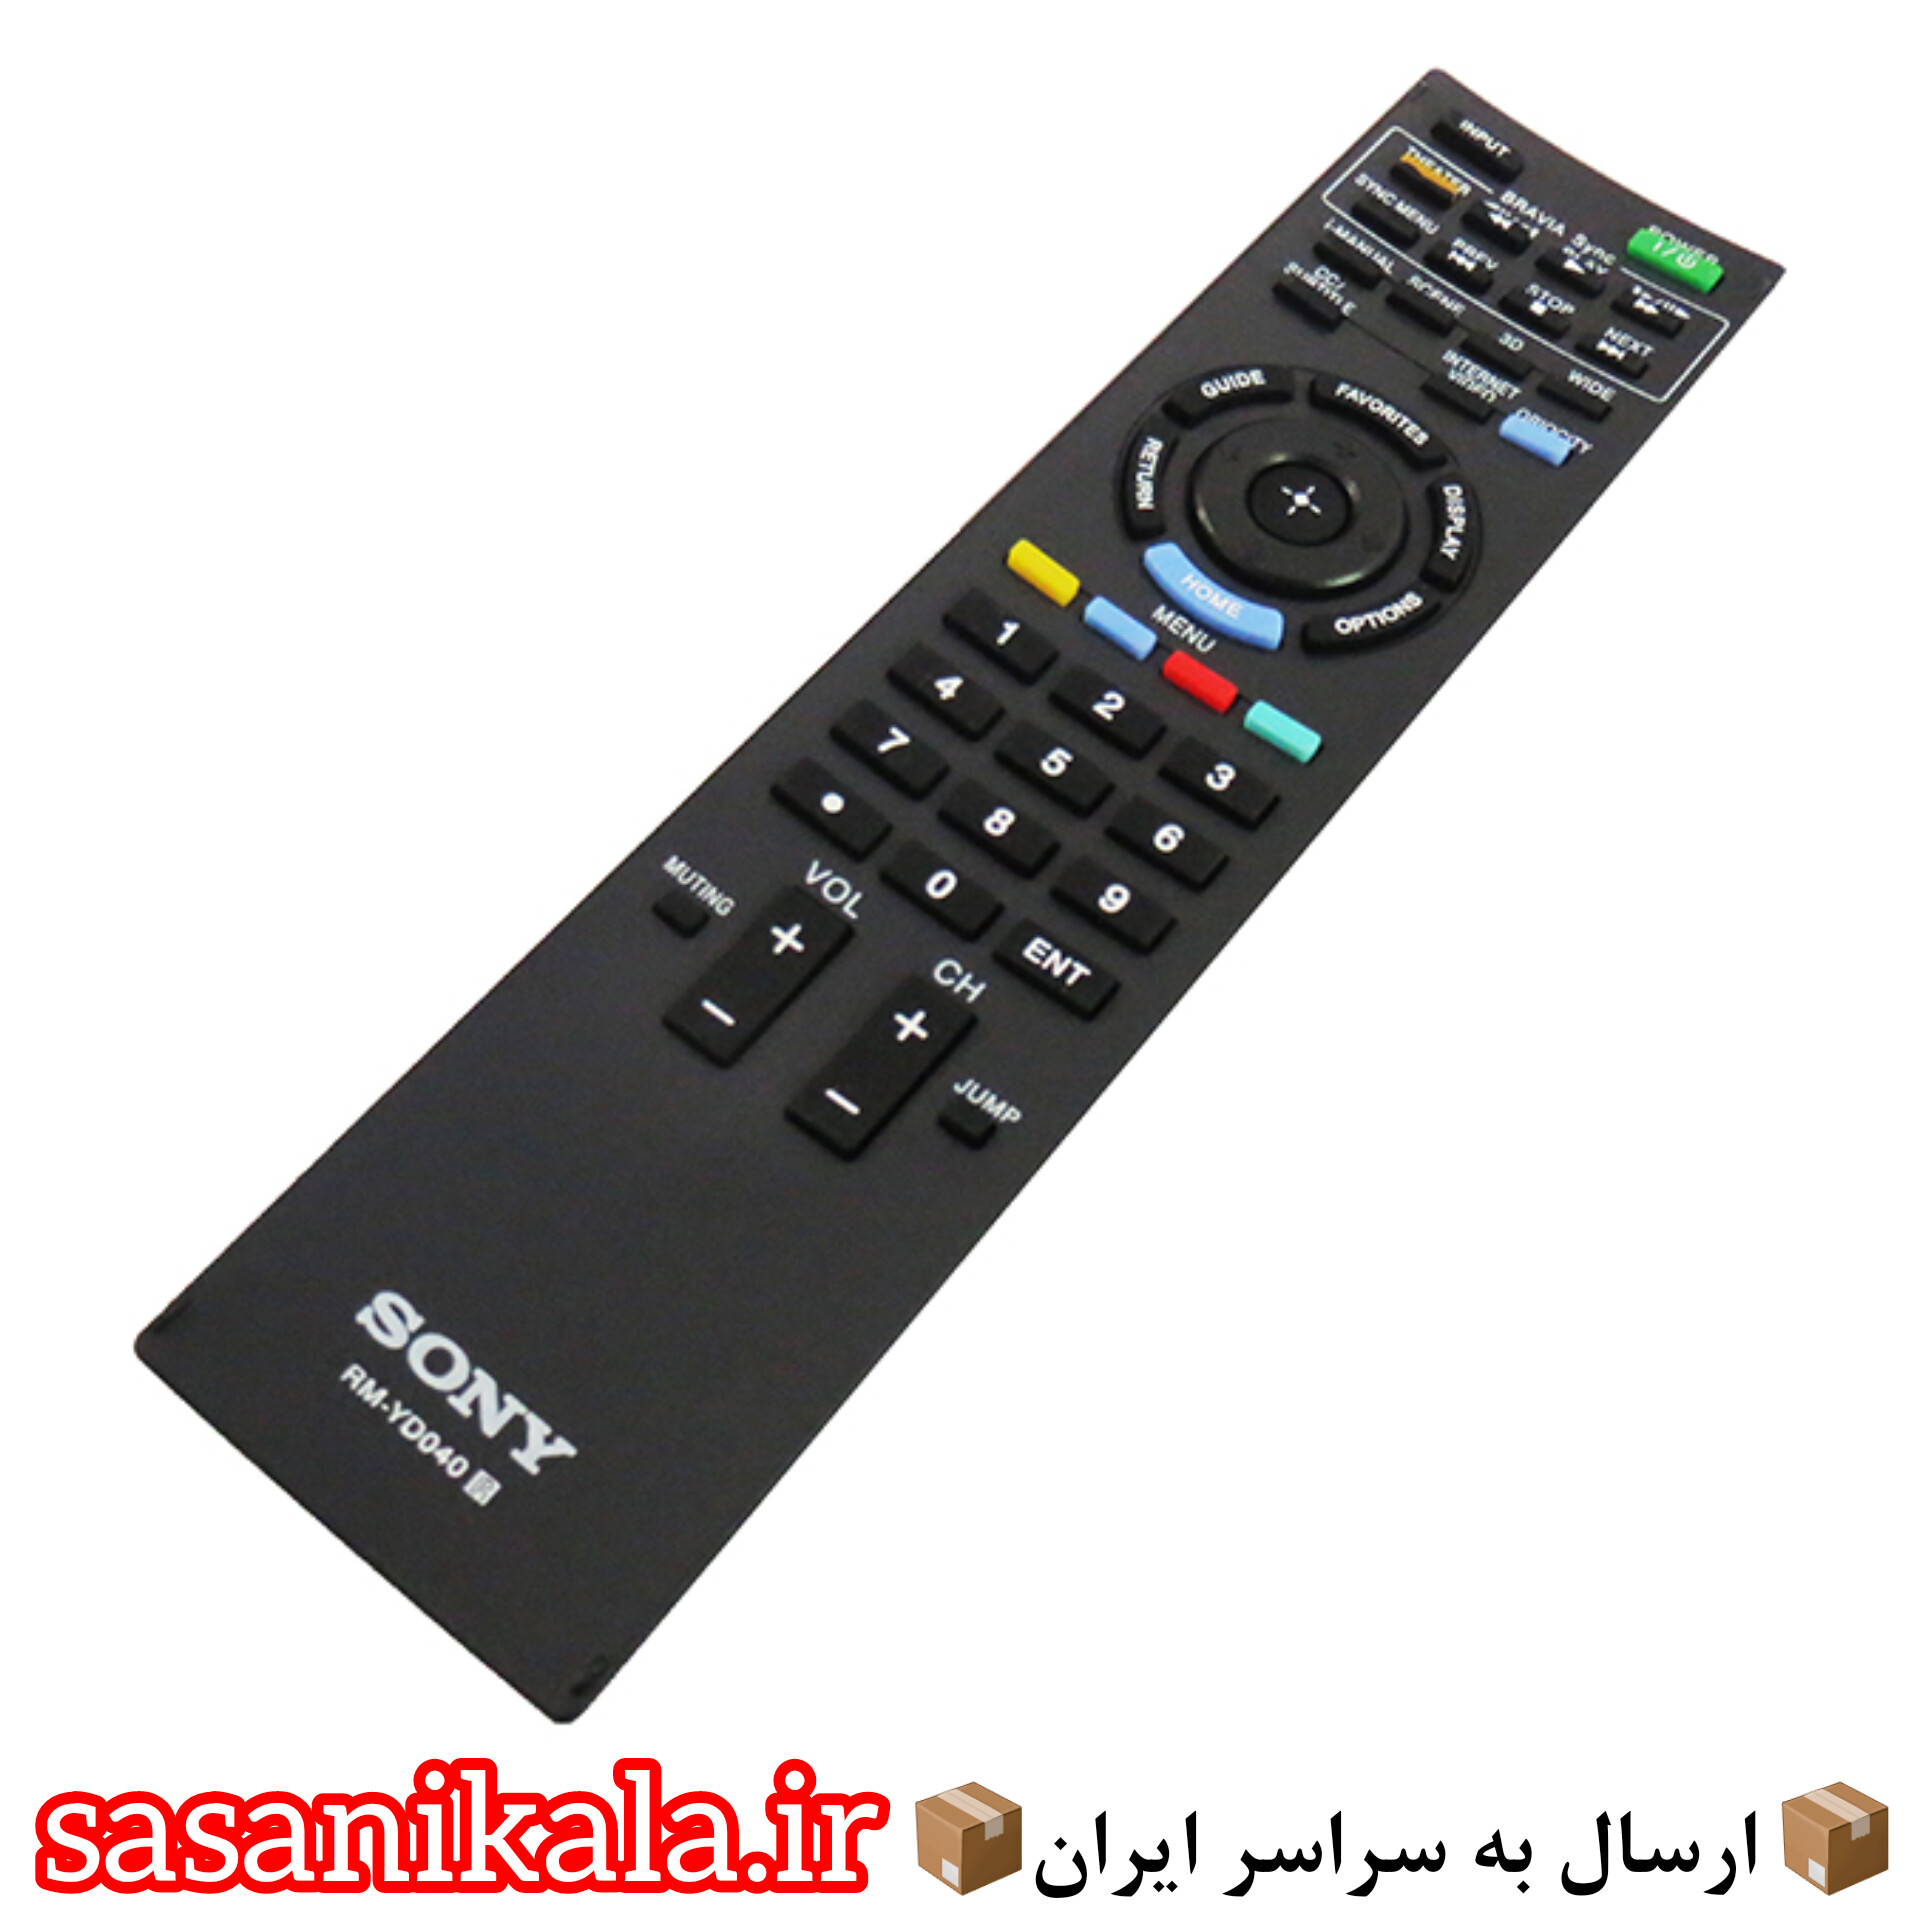 کنترل تلوزیون های سونی مدل 040